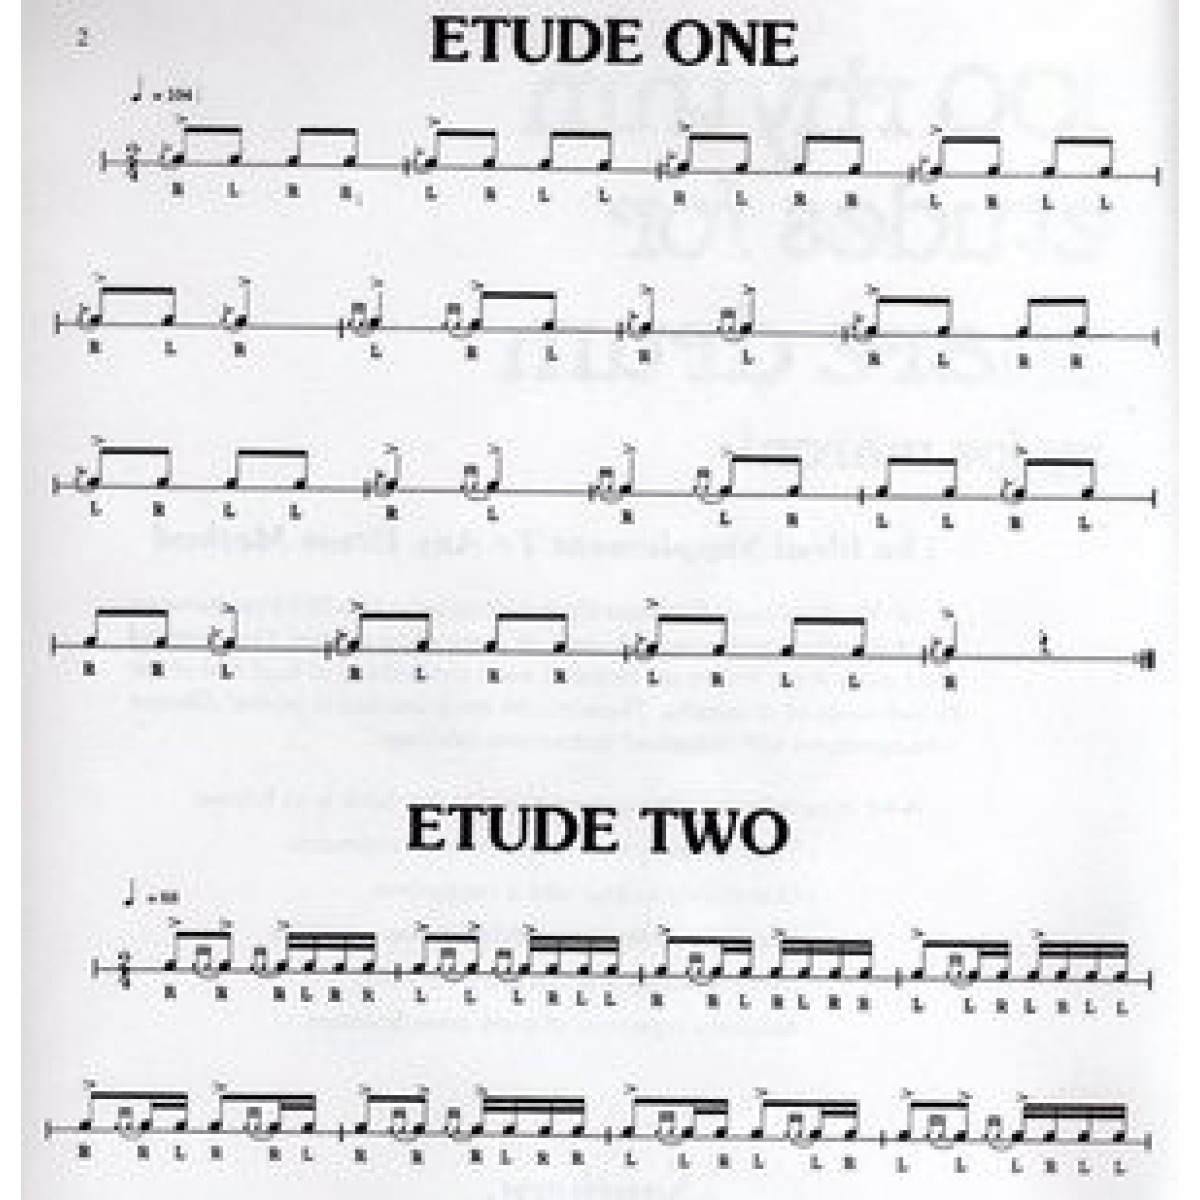 100 Rhythm Etudes For Snare Drum by Joe Maroni